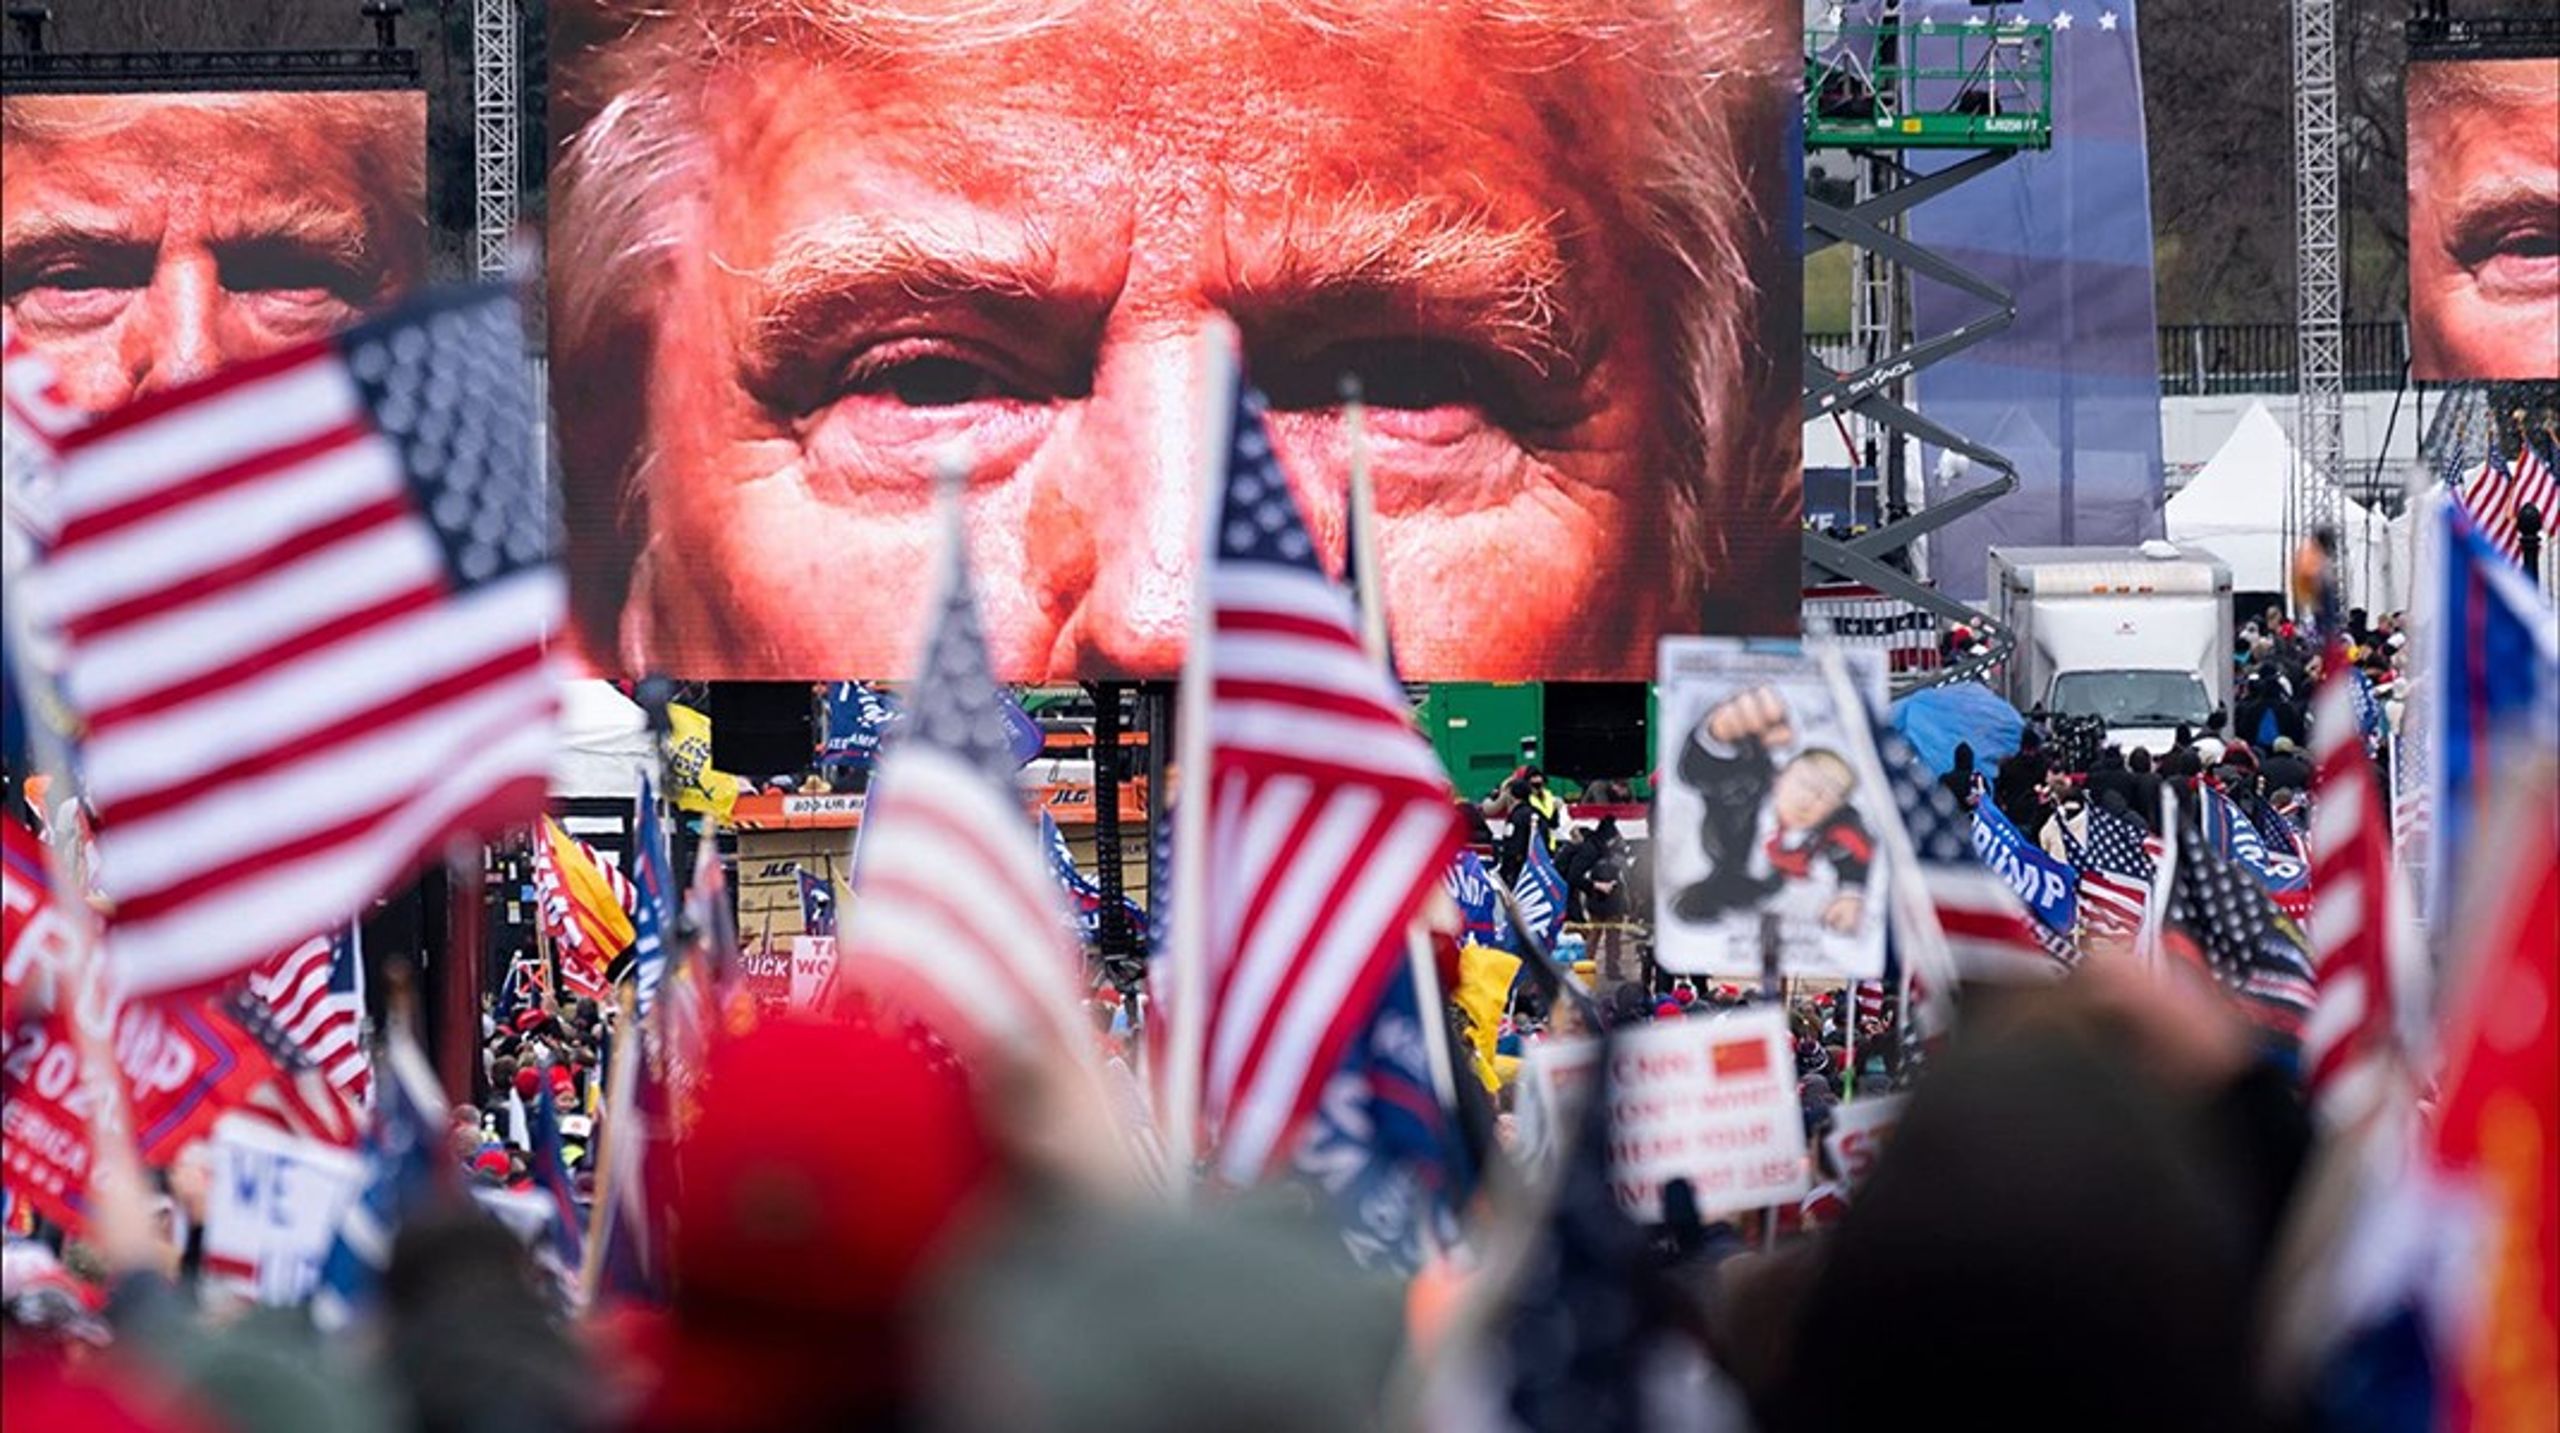 Vi er 'Betrayal – The Final Act of the Trump Show' med&nbsp;fra øjeblikket, hvor corona rammer, via Trumps katastrofale håndtering af krisen og hans kaotiske valgkamp og frem til afvisningen af valgnederlaget og stormløbet på Kongressen, skriver David Trads.